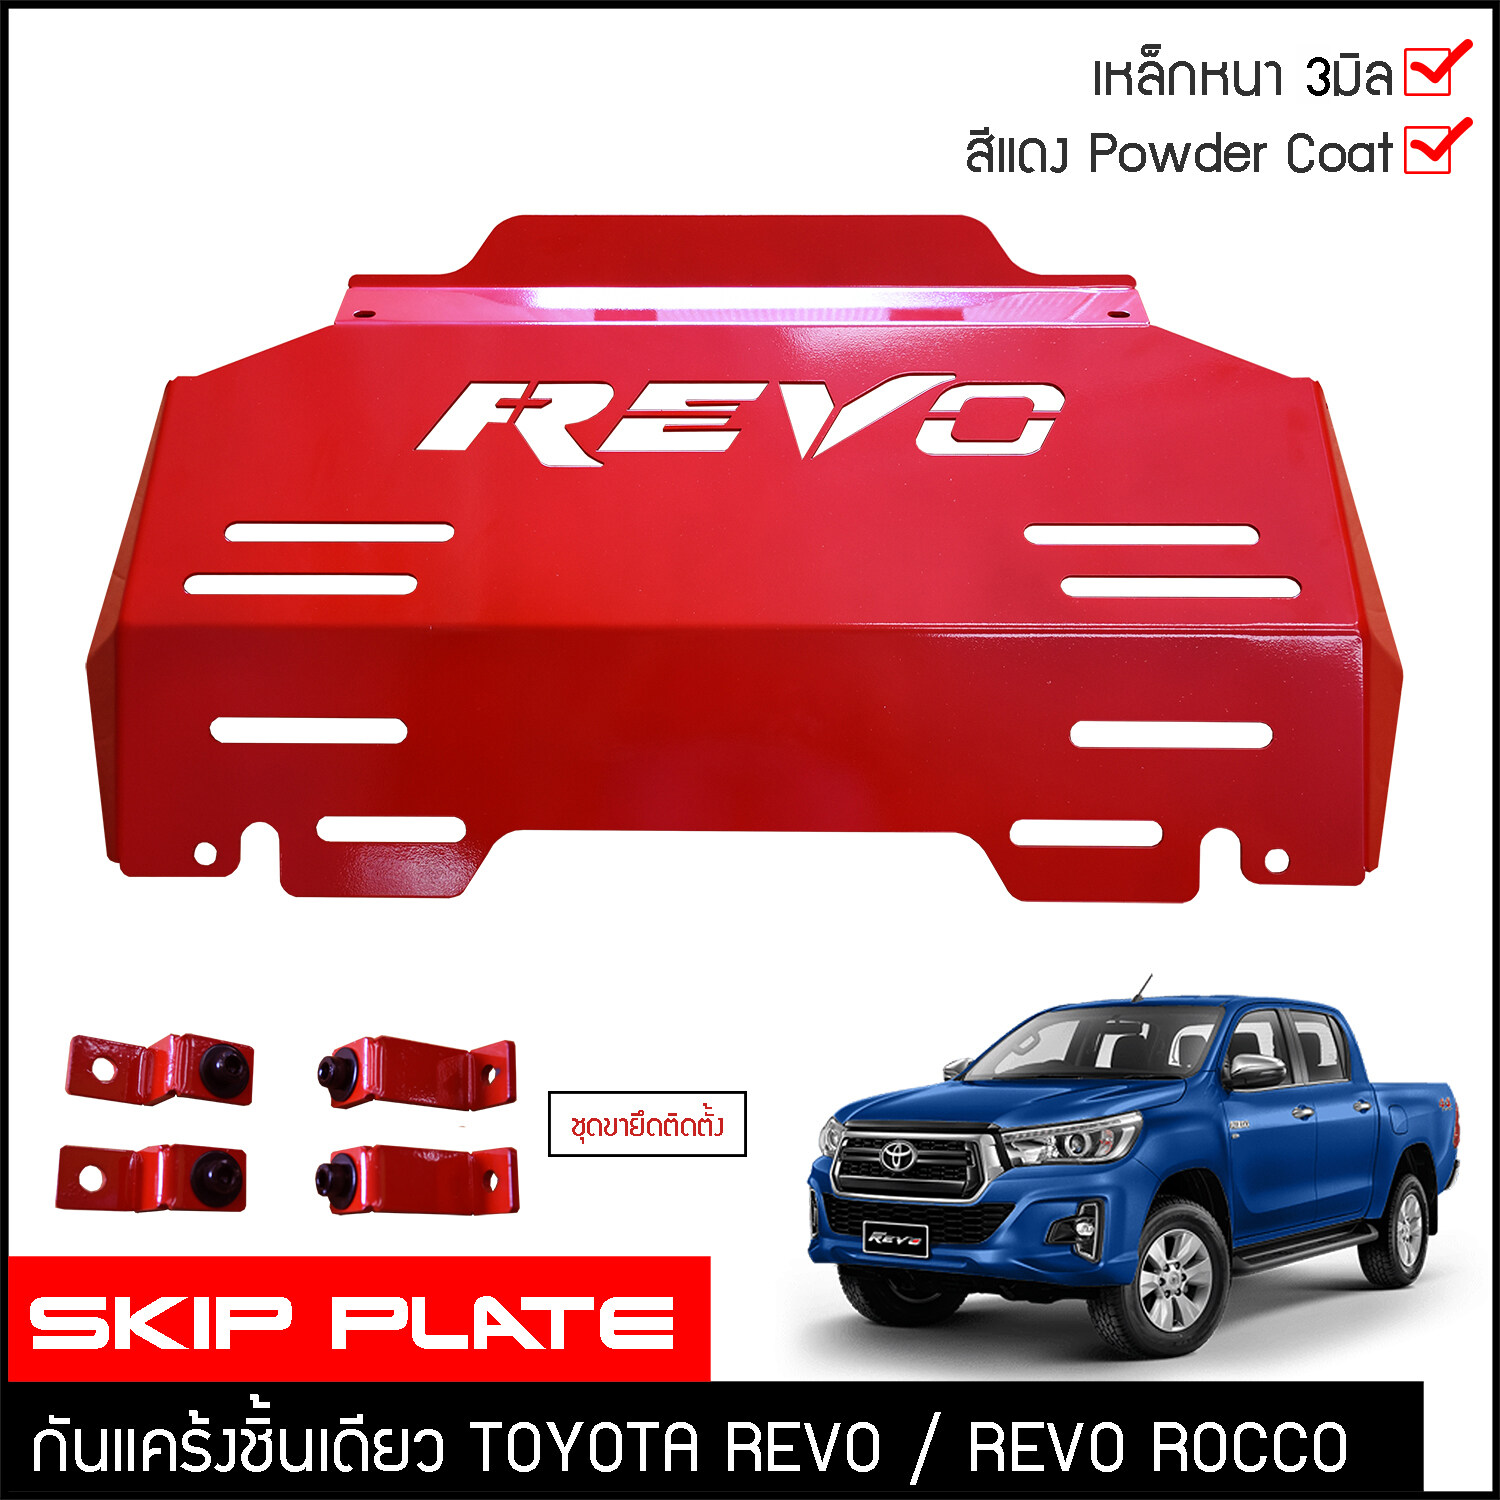 กันแคร้งrevo กันแคร้ง กันแค้ง แค้ง กันกระแทรก กันรอย ใต้เครื่อง Toyota Revo / Revo Rocco สีแดง เหล็กหนา กันกระแทกใต้ท้องรถ โตโยต้า รีโว่ ชุดแต่งออฟโรด4x4